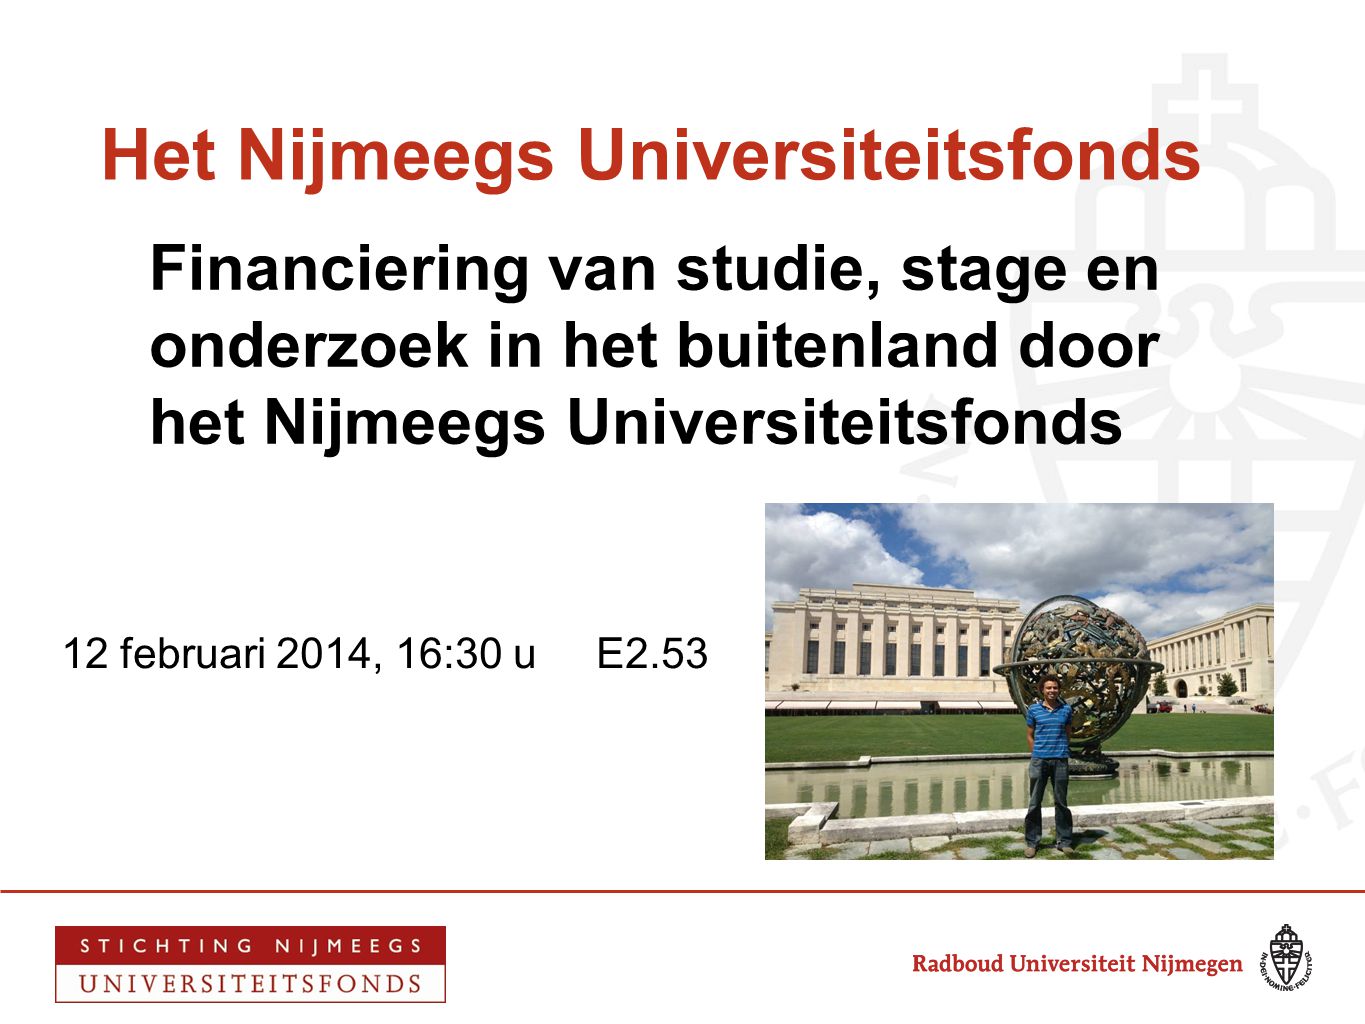 Het Nijmeegs Universiteitsfonds